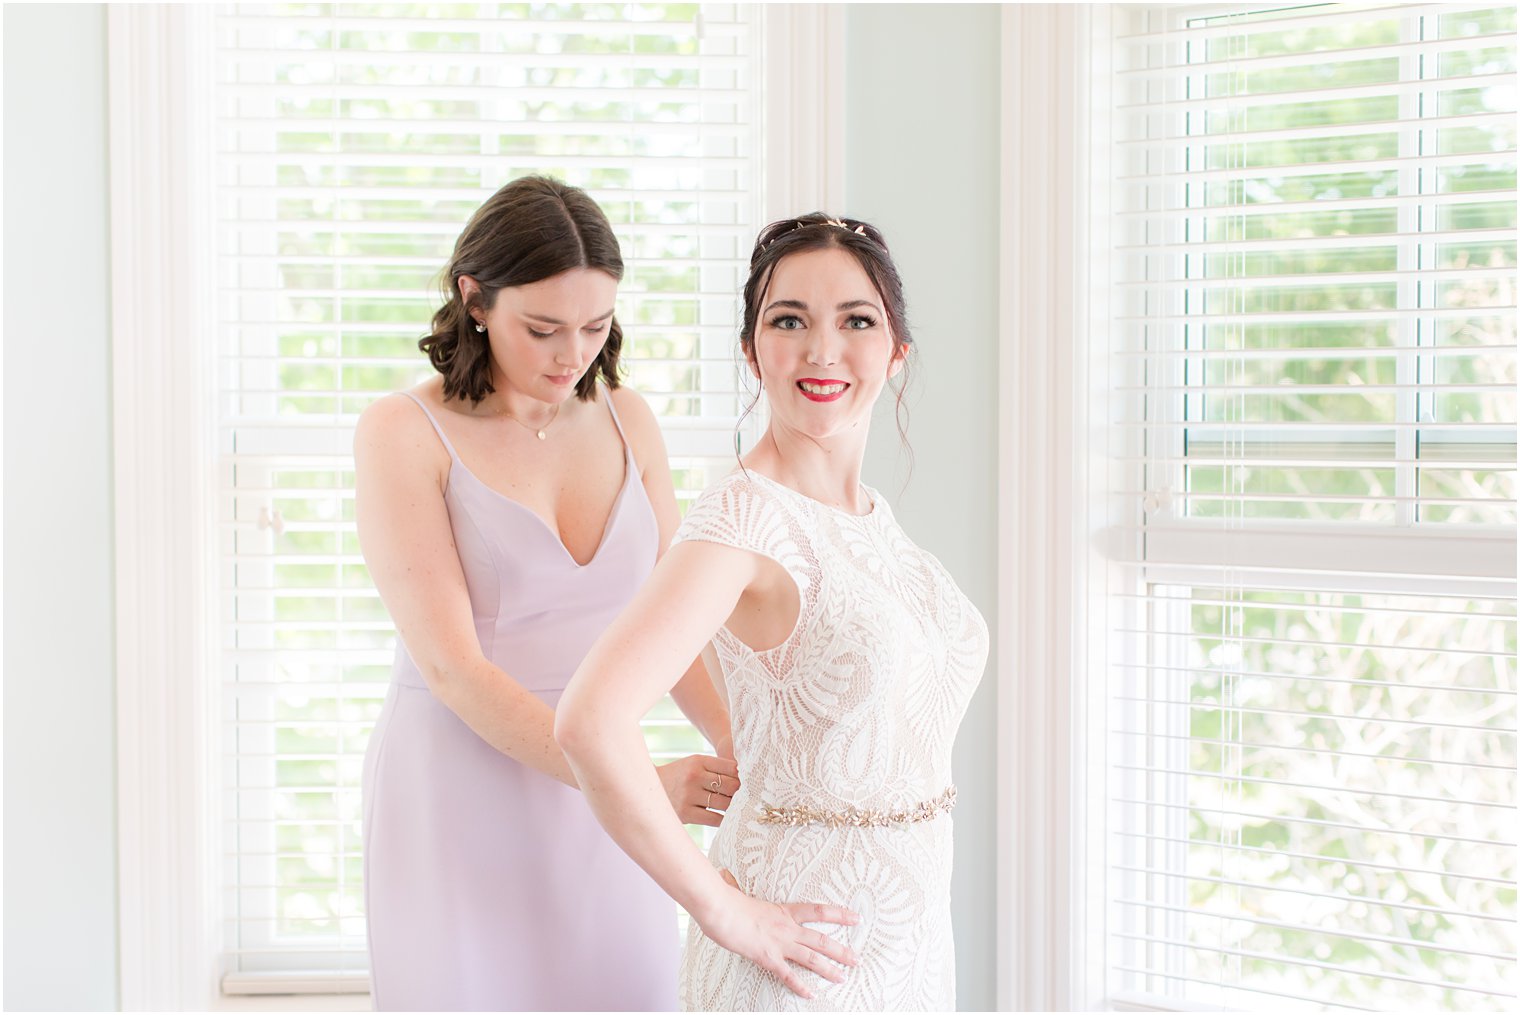 bride gets into wedding dress with bridesmaid's help